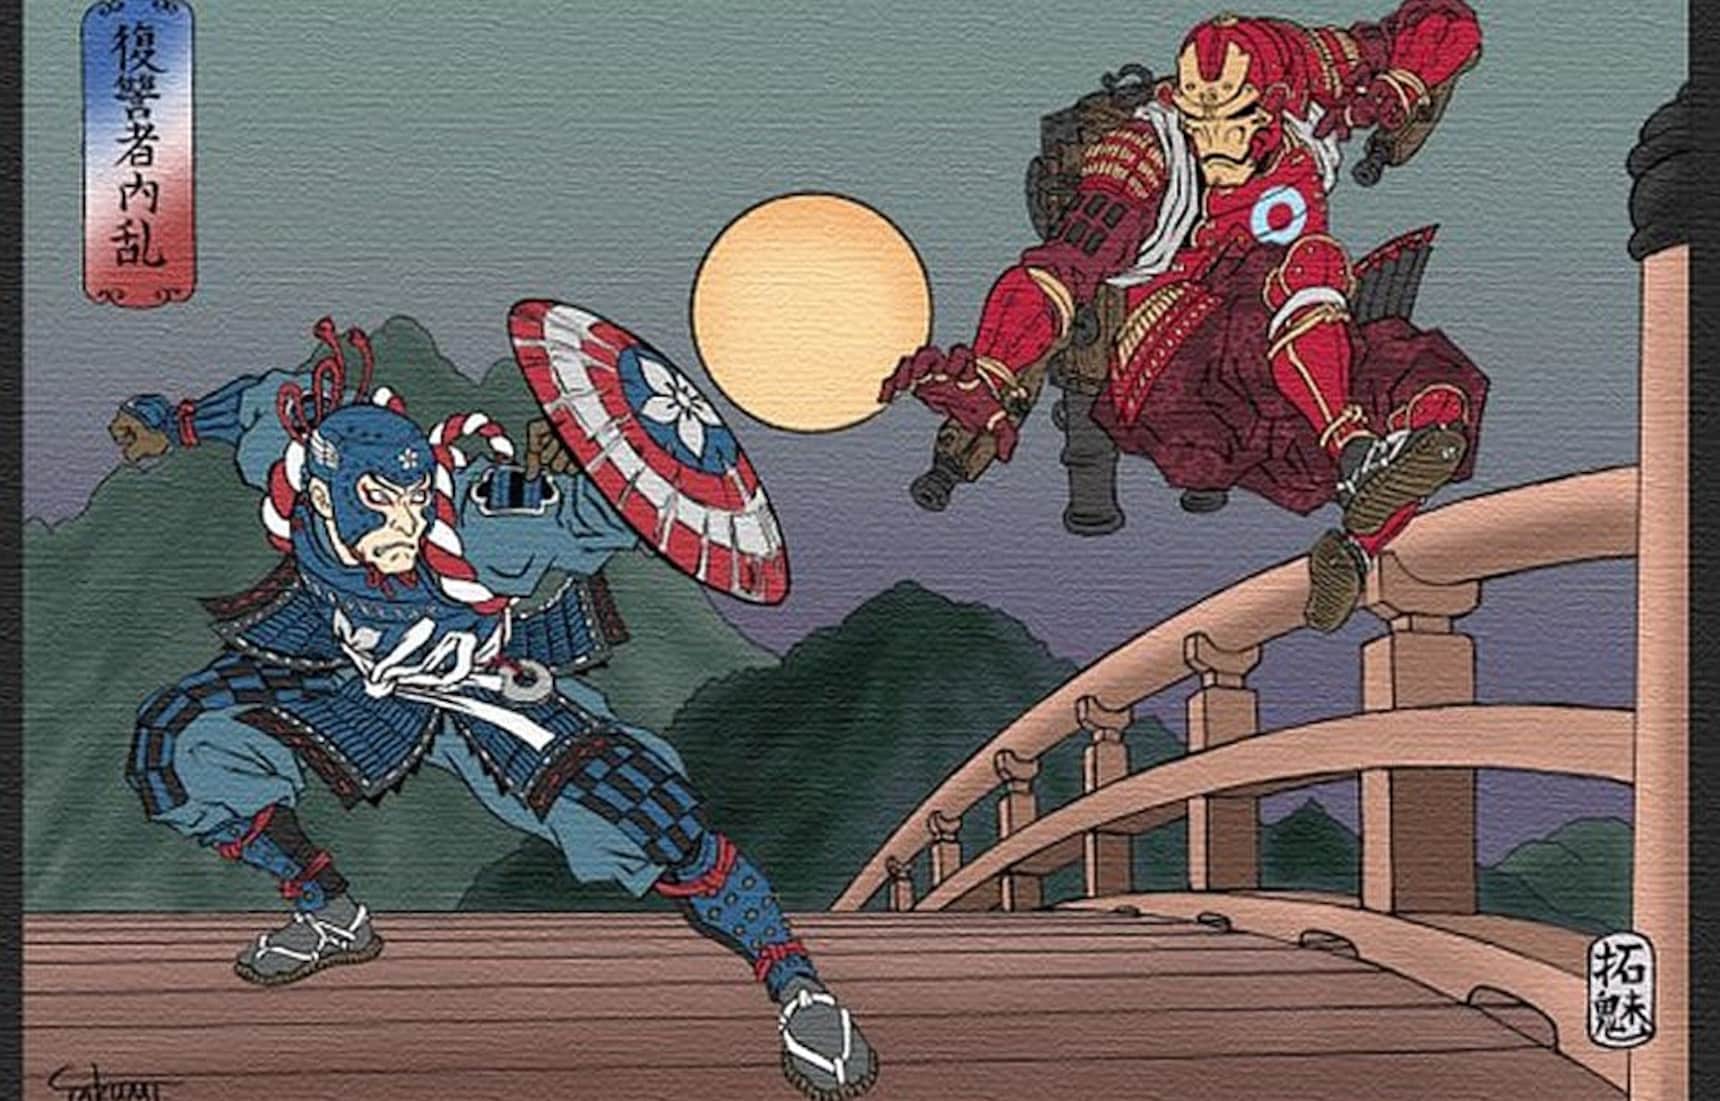 Captain America & Iron Man... Samurai?!